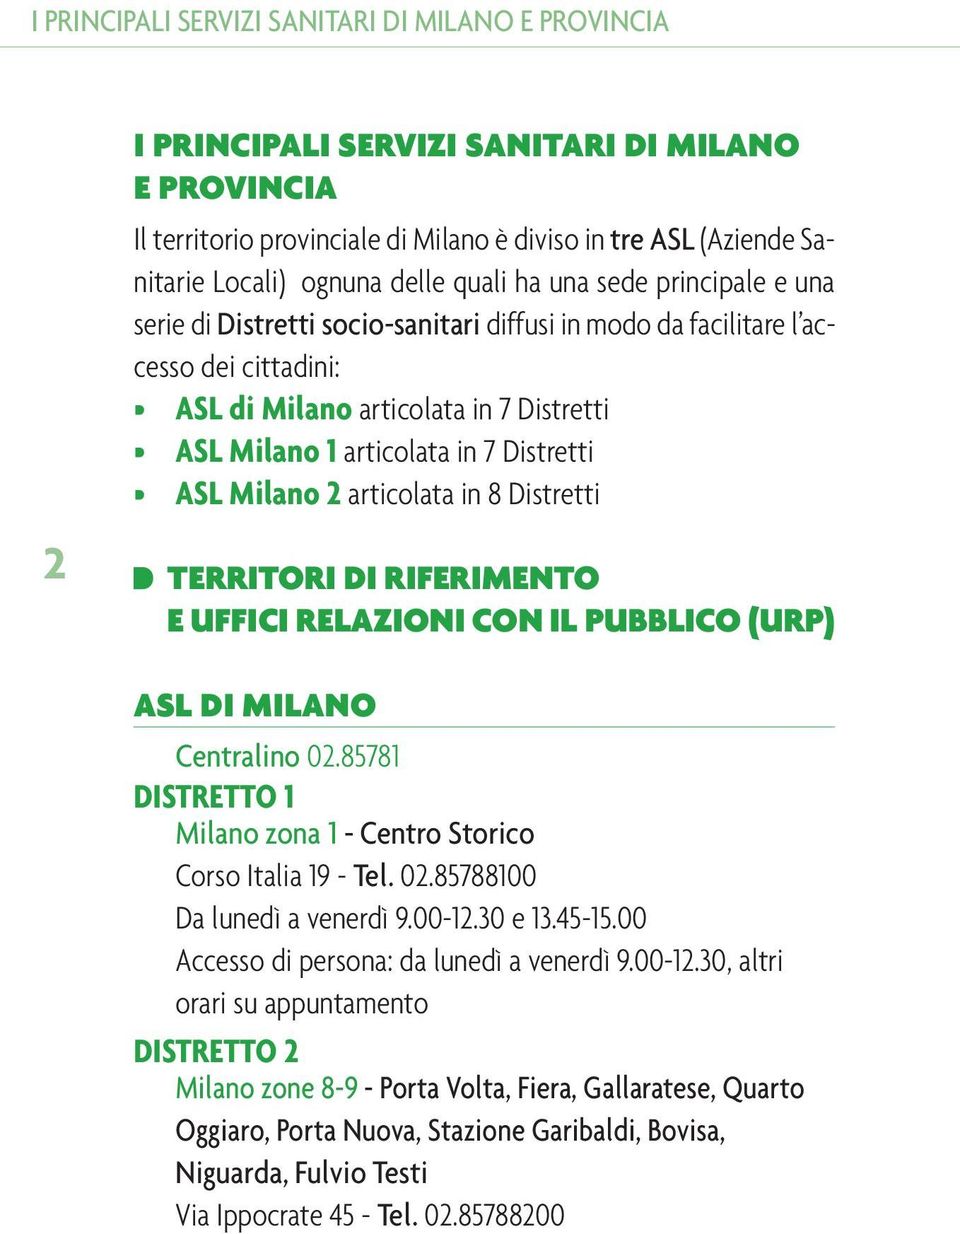 Distretti ASL Milano 2 articolata in 8 Distretti TERRITORI DI RIFERIMENTO E UFFICI RELAZIONI CON IL PUBBLICO (URP) ASL DI MILANO Centralino 02.